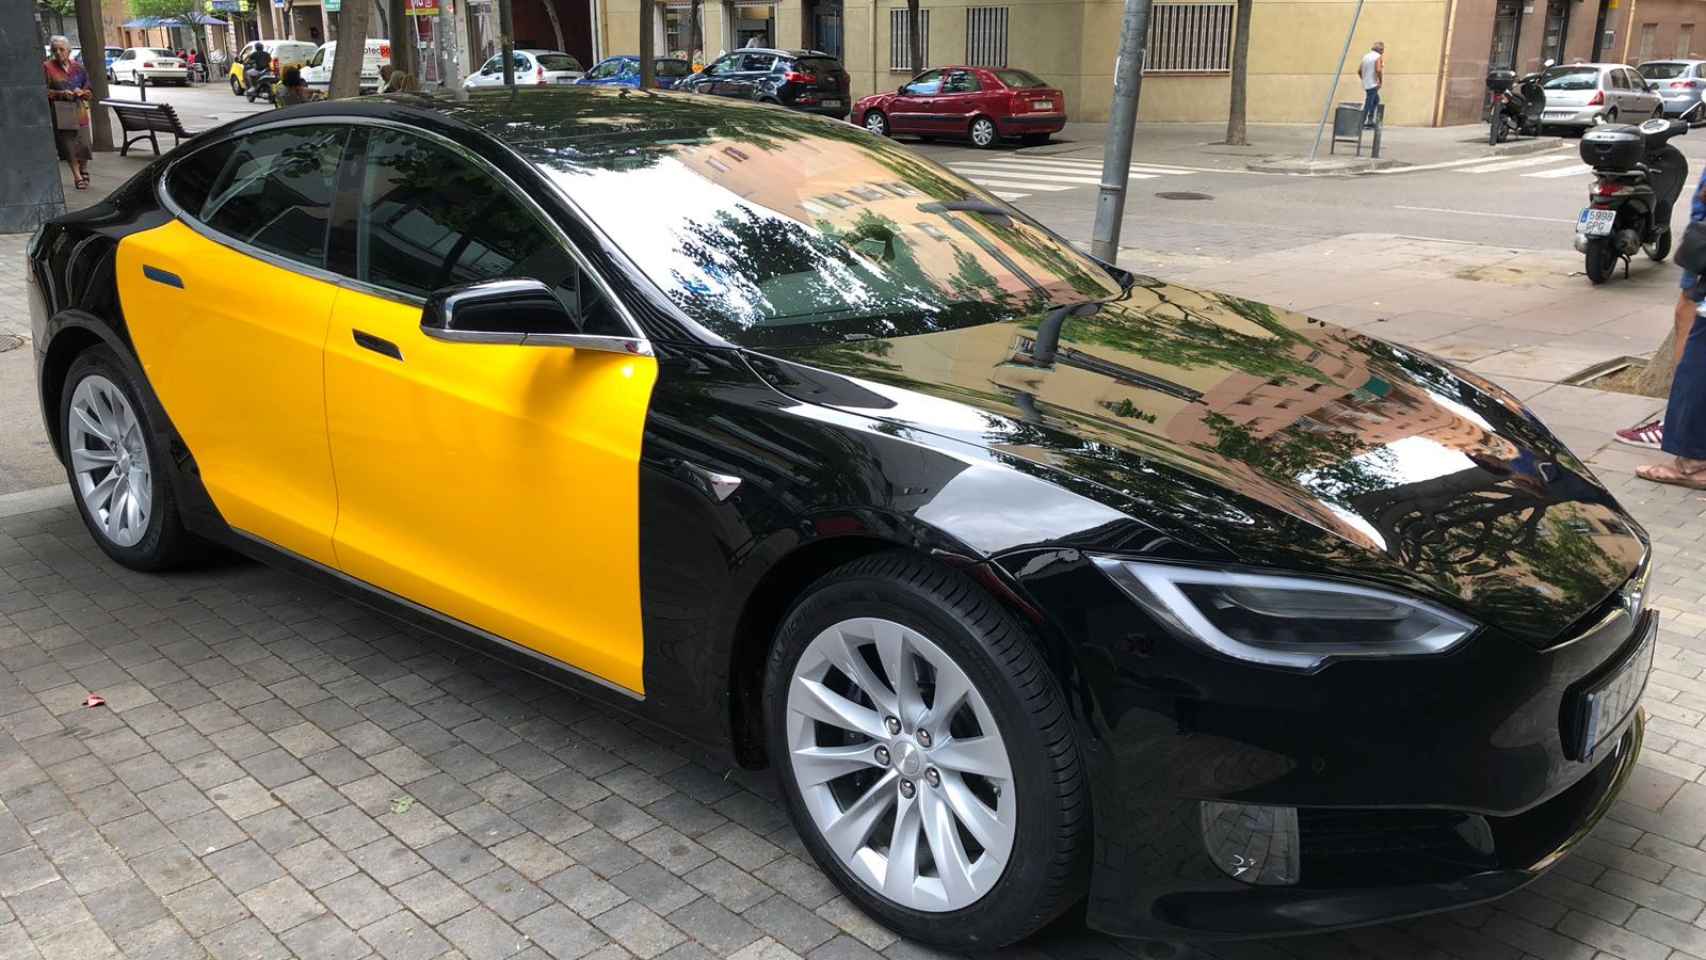 El vehículo eléctrico Tesla de elegante diseño empezará a circular la semana que viene